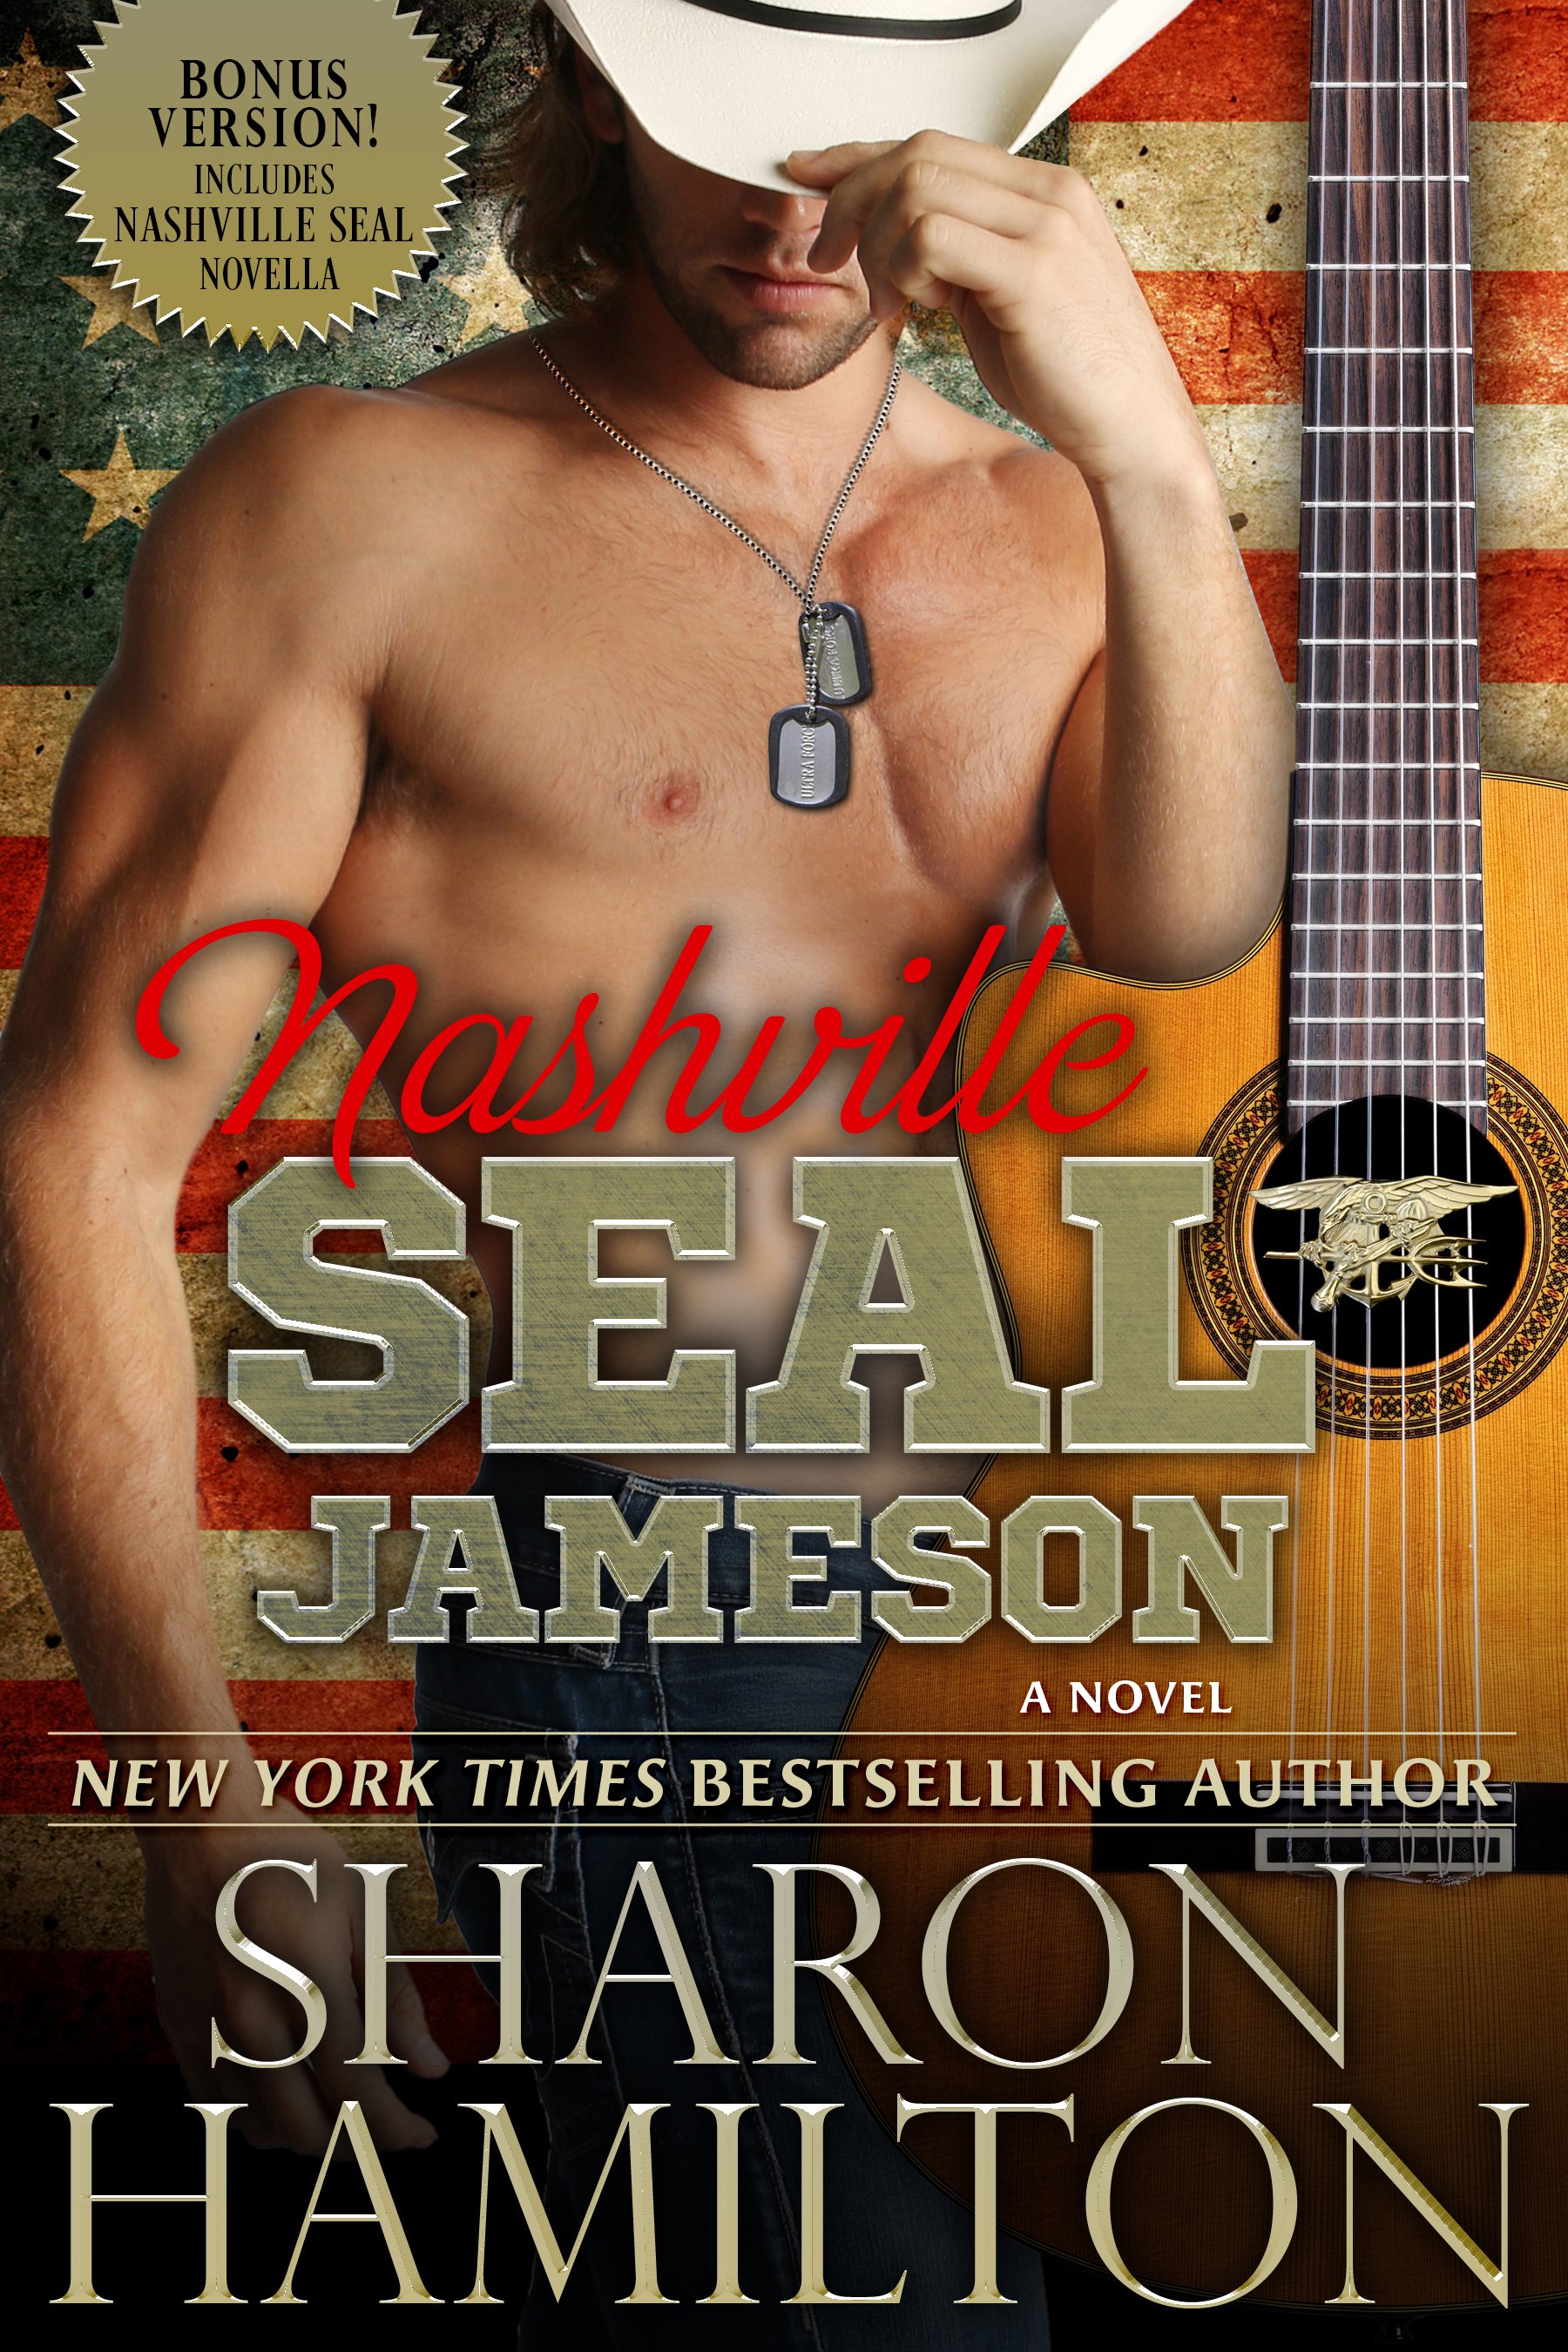 Nashville SEAL a Book by Author Sharon Hamilton